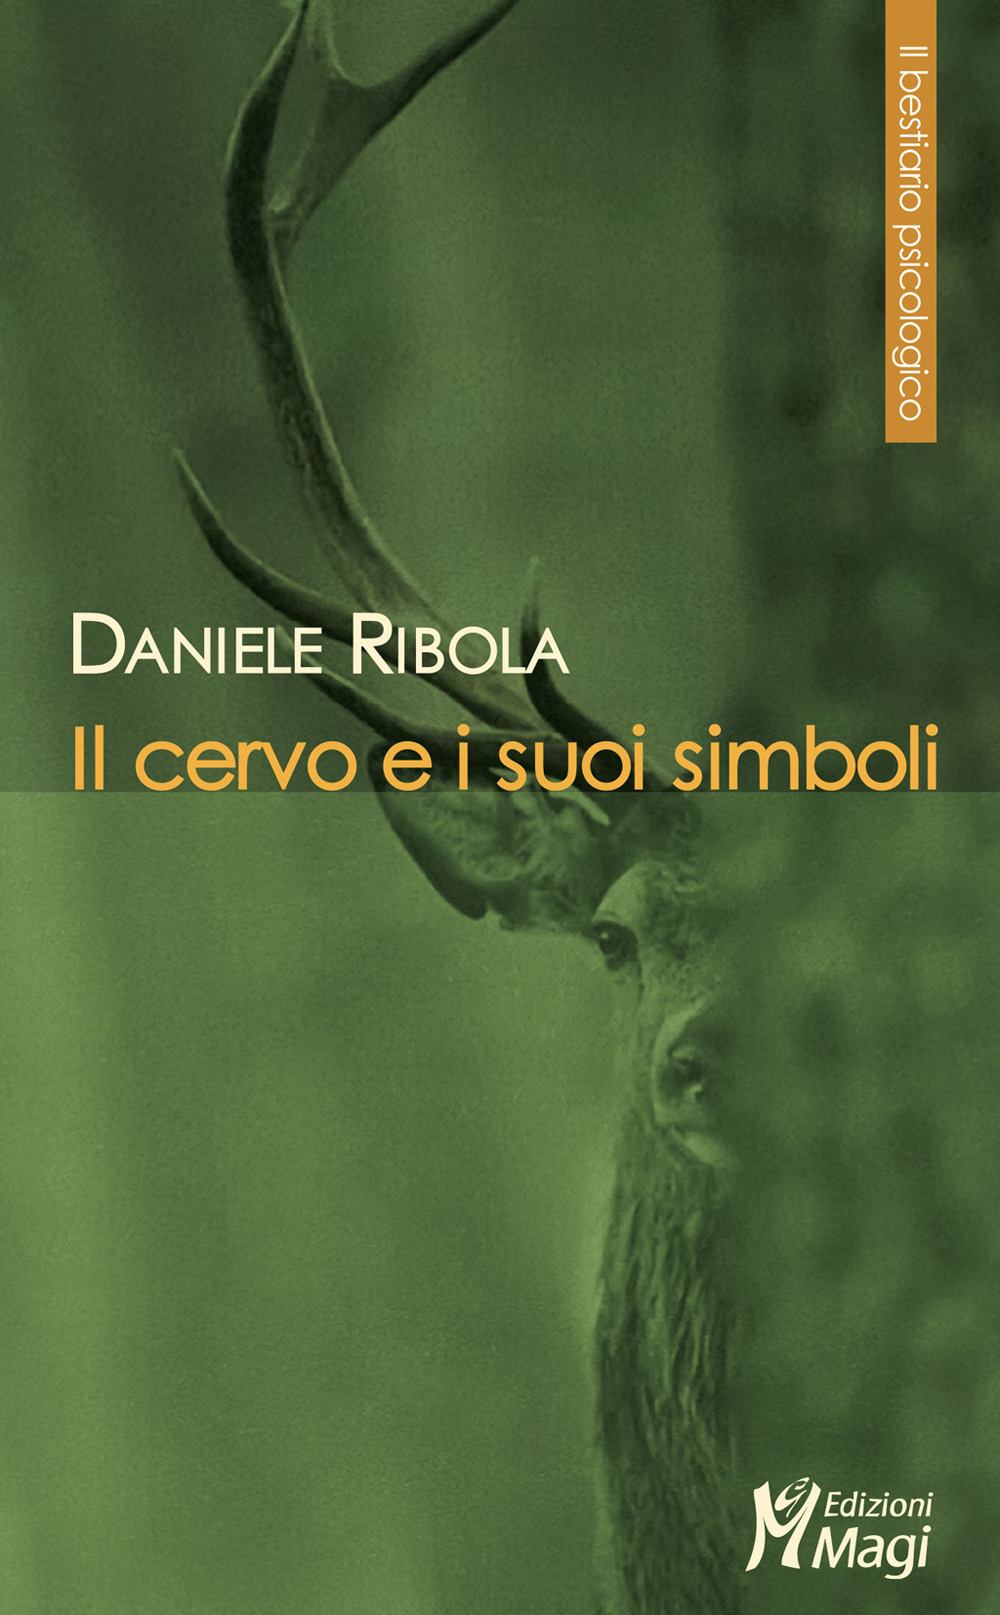 Libri Daniele Ribola - Il Cervo E I Suoi Simboli NUOVO SIGILLATO, EDIZIONE DEL 21/10/2021 SUBITO DISPONIBILE